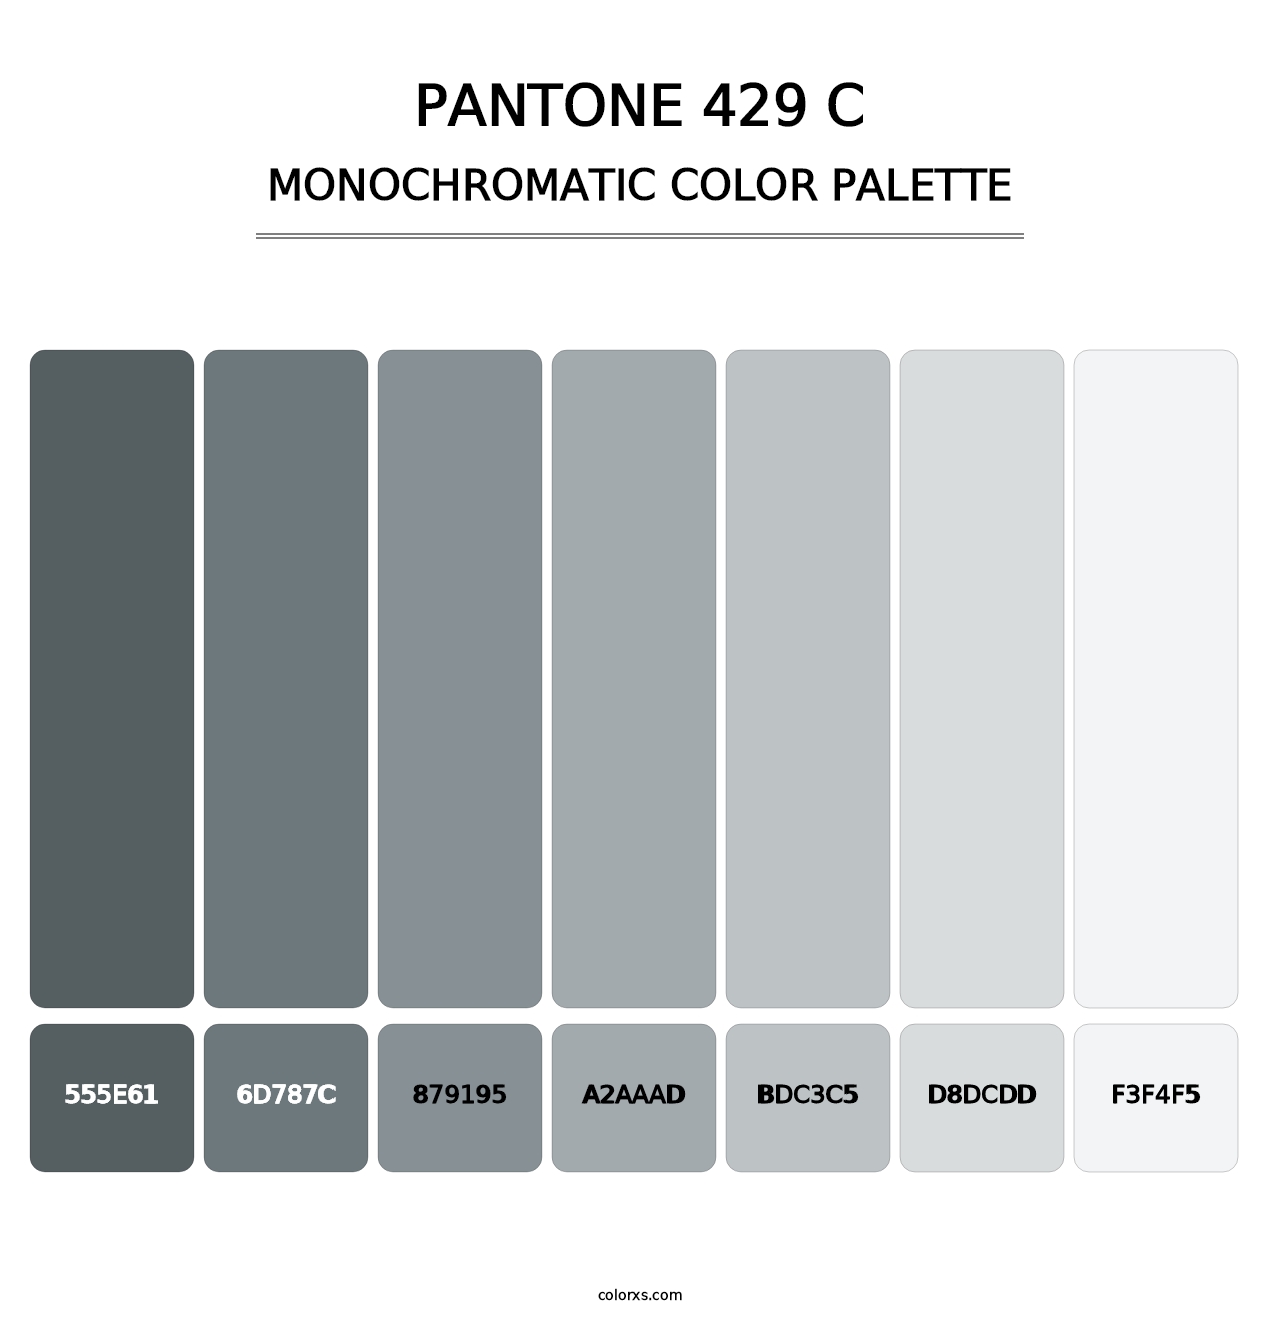 PANTONE 429 C - Monochromatic Color Palette